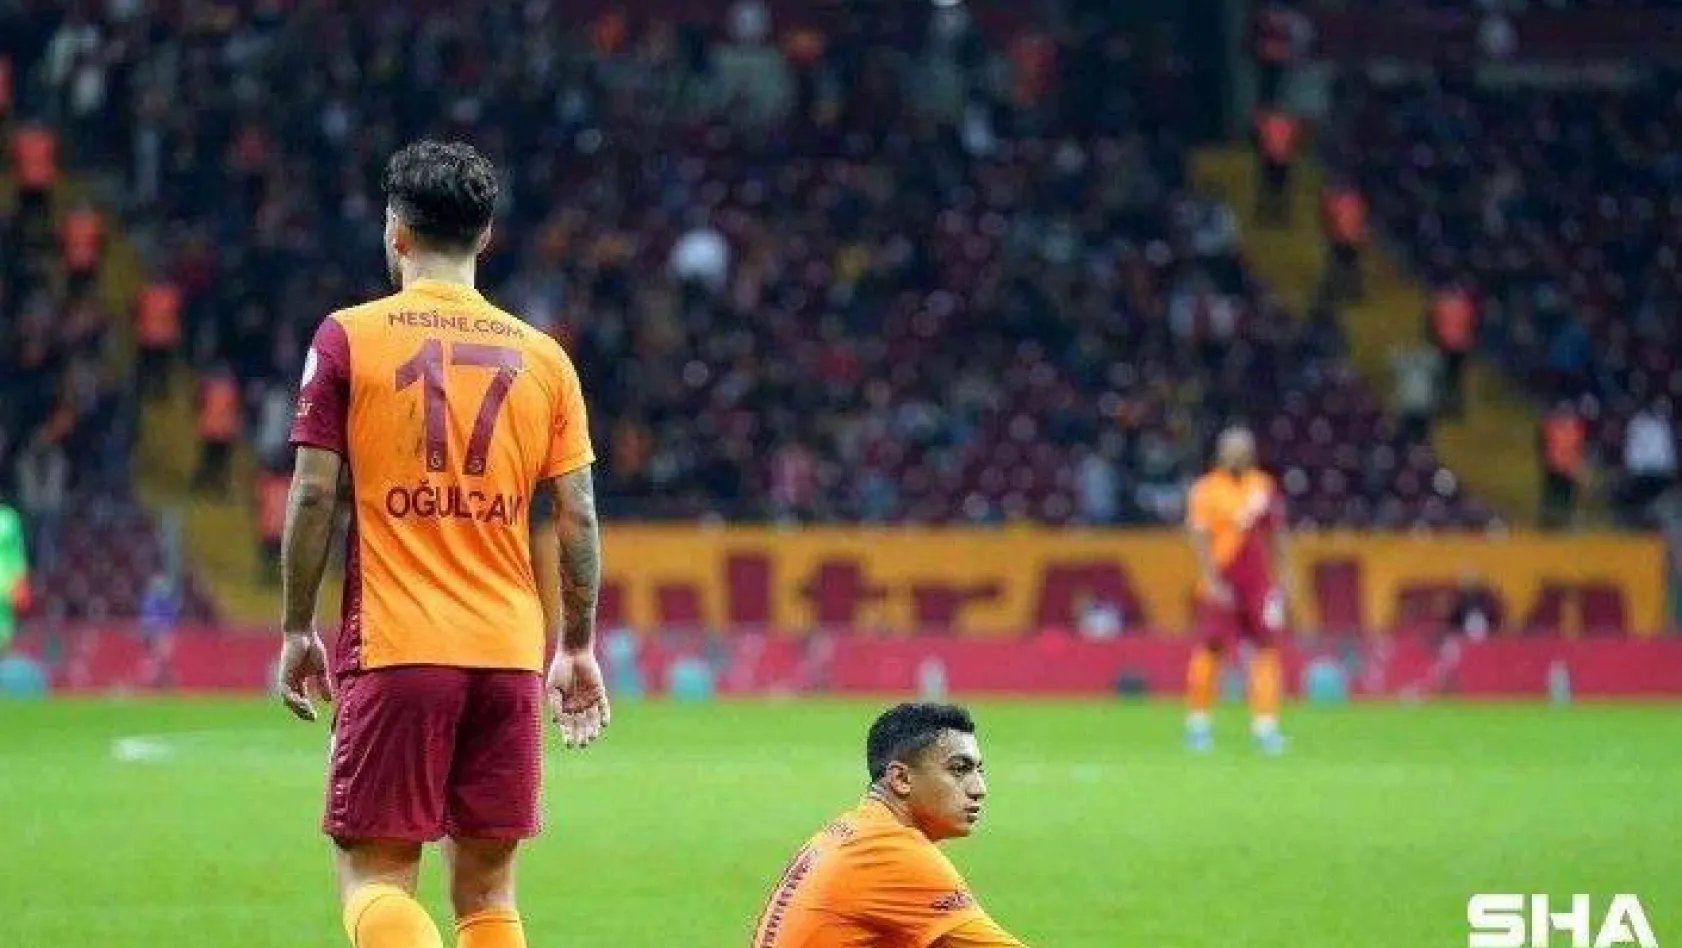 Ziraat Türkiye Kupası: Galatasaray: 3 - Denizlispor: 3 (Maç sonucu)